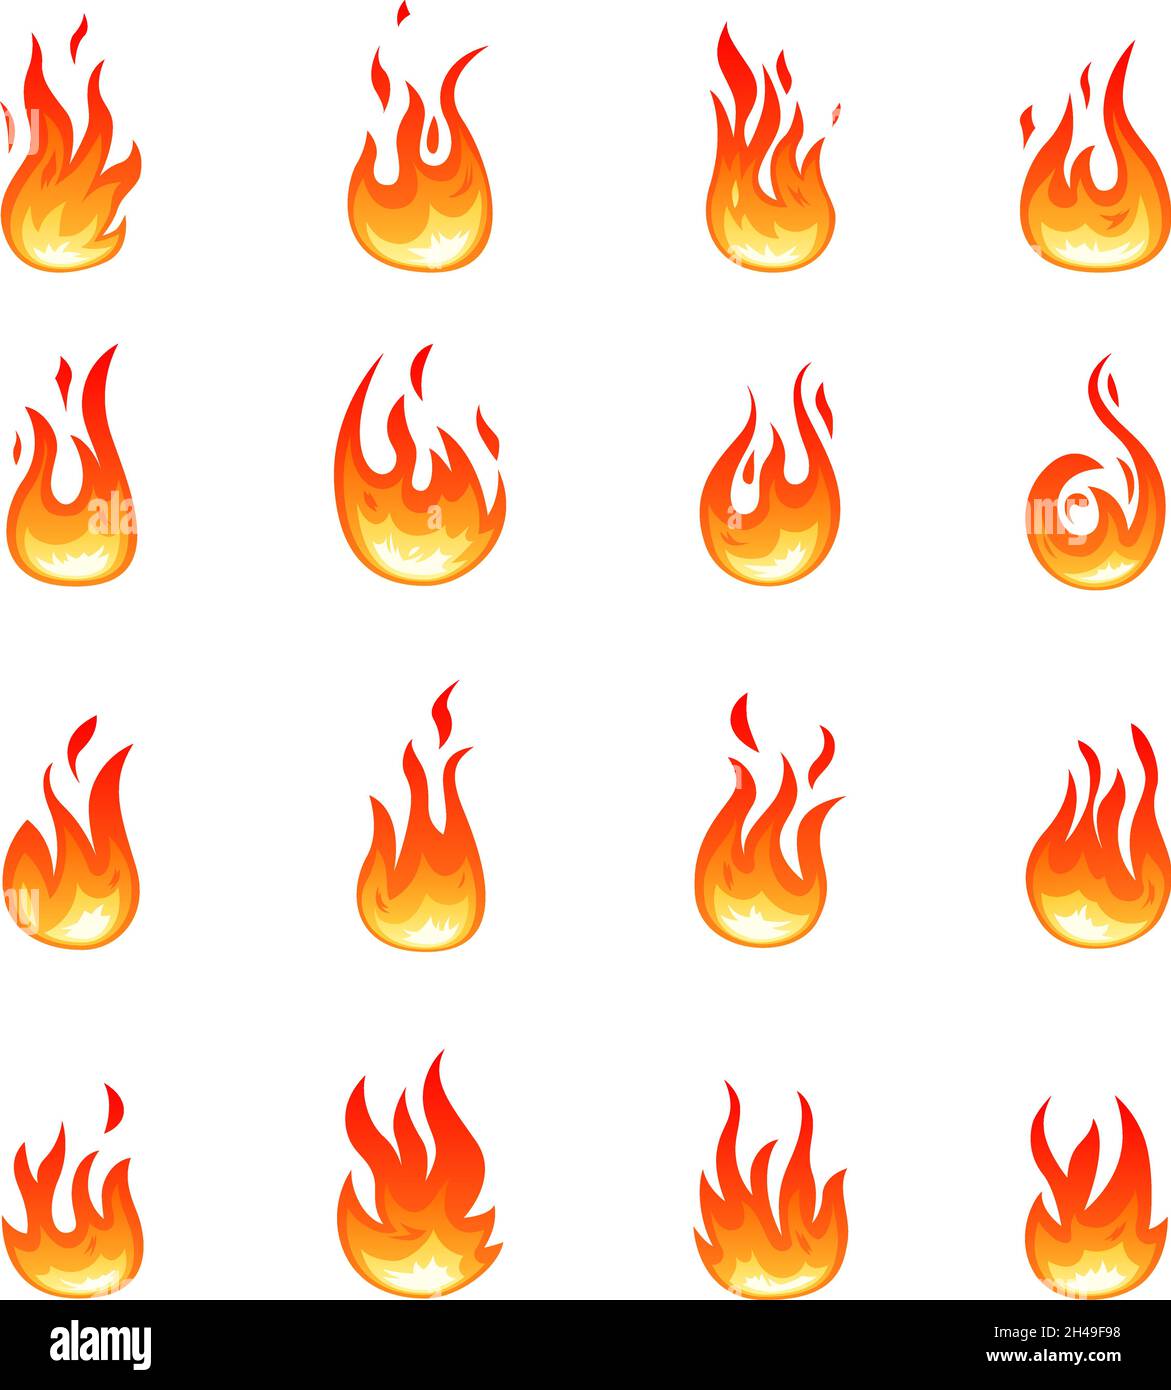 Cartoon-Feuer-Symbole. Orangefarbene Blaze-Symbole, Flammensymbole. Isoliertes Lagerfeuer, brennendes Lagerfeuer. Entflammbar, Gefahrenwirkung oder Zündquelle vor kurzem Stock Vektor